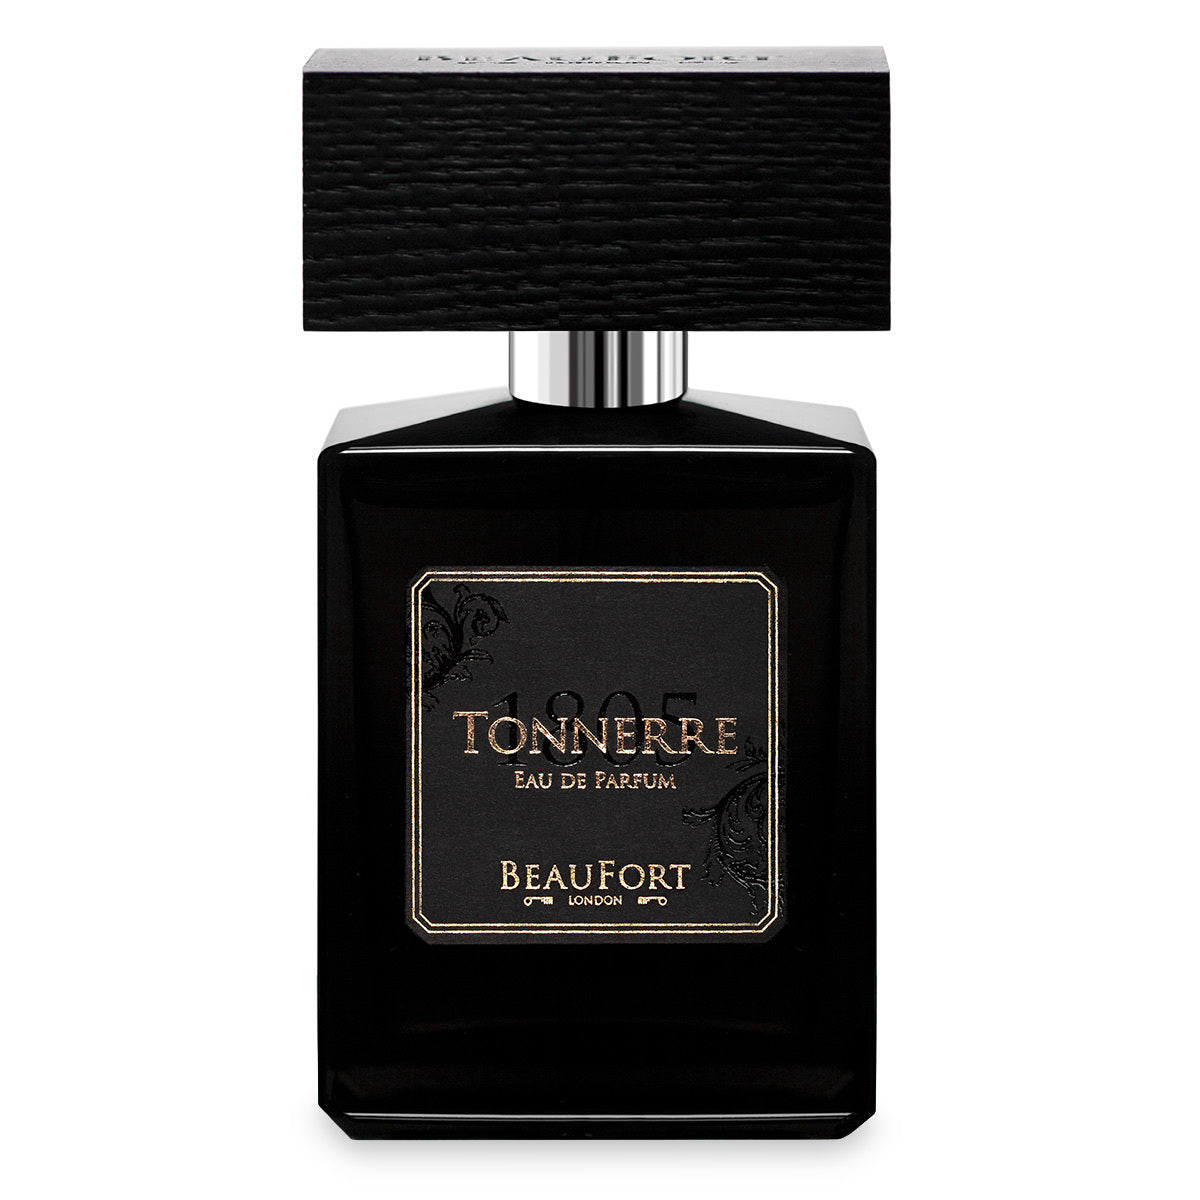 Primary image of 1805 Tonnerre Eau de Parfum